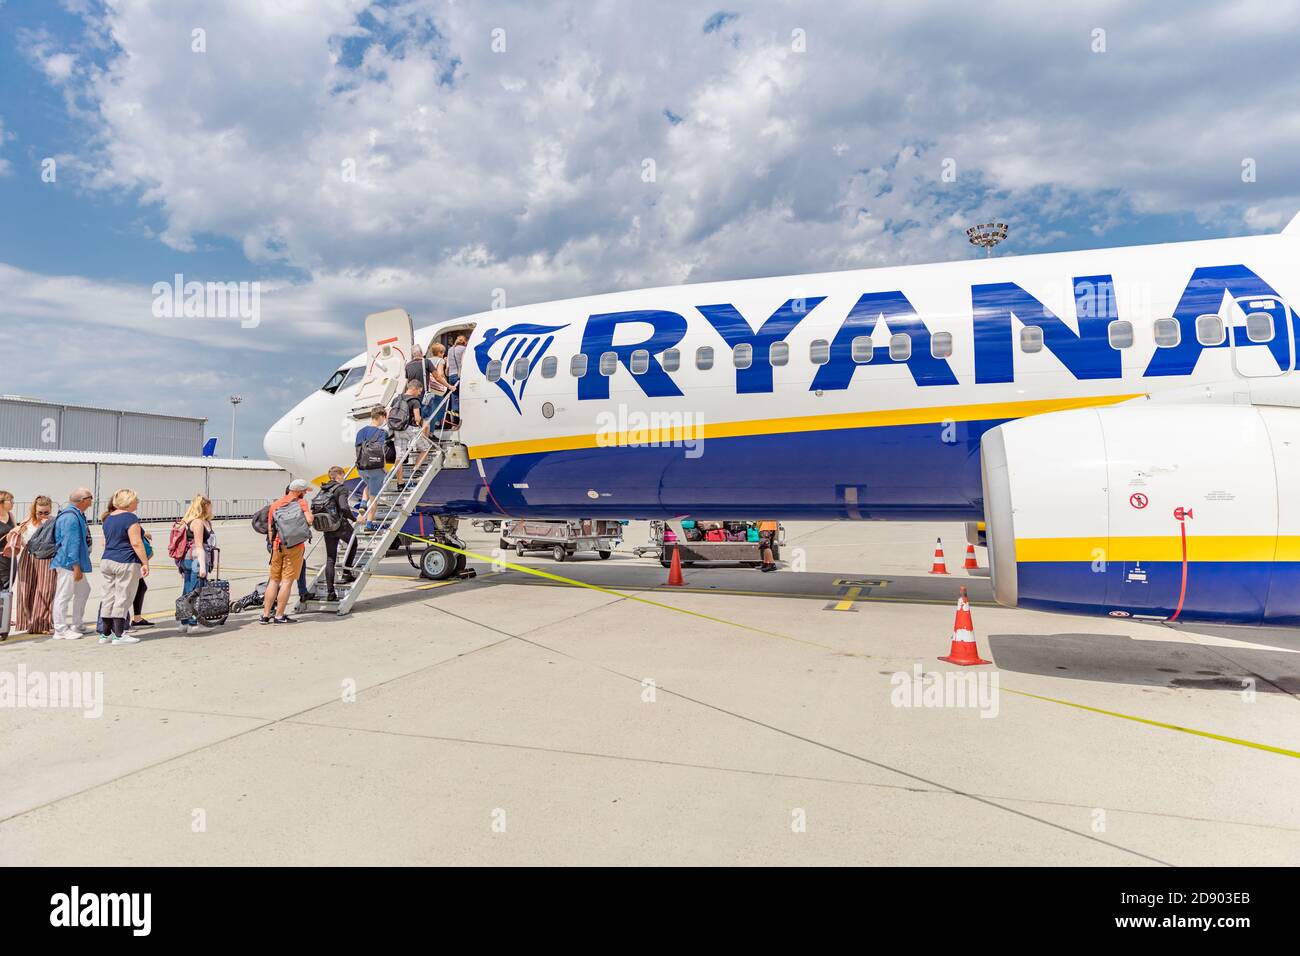 Provenza, Francia - 10.10.19: Aereo Ryanair all'aeroporto. Il capitano pilota saluti. Boeing 737-800. Compagnia aerea Ryanair. Compagnia aerea low cost. Foto Stock